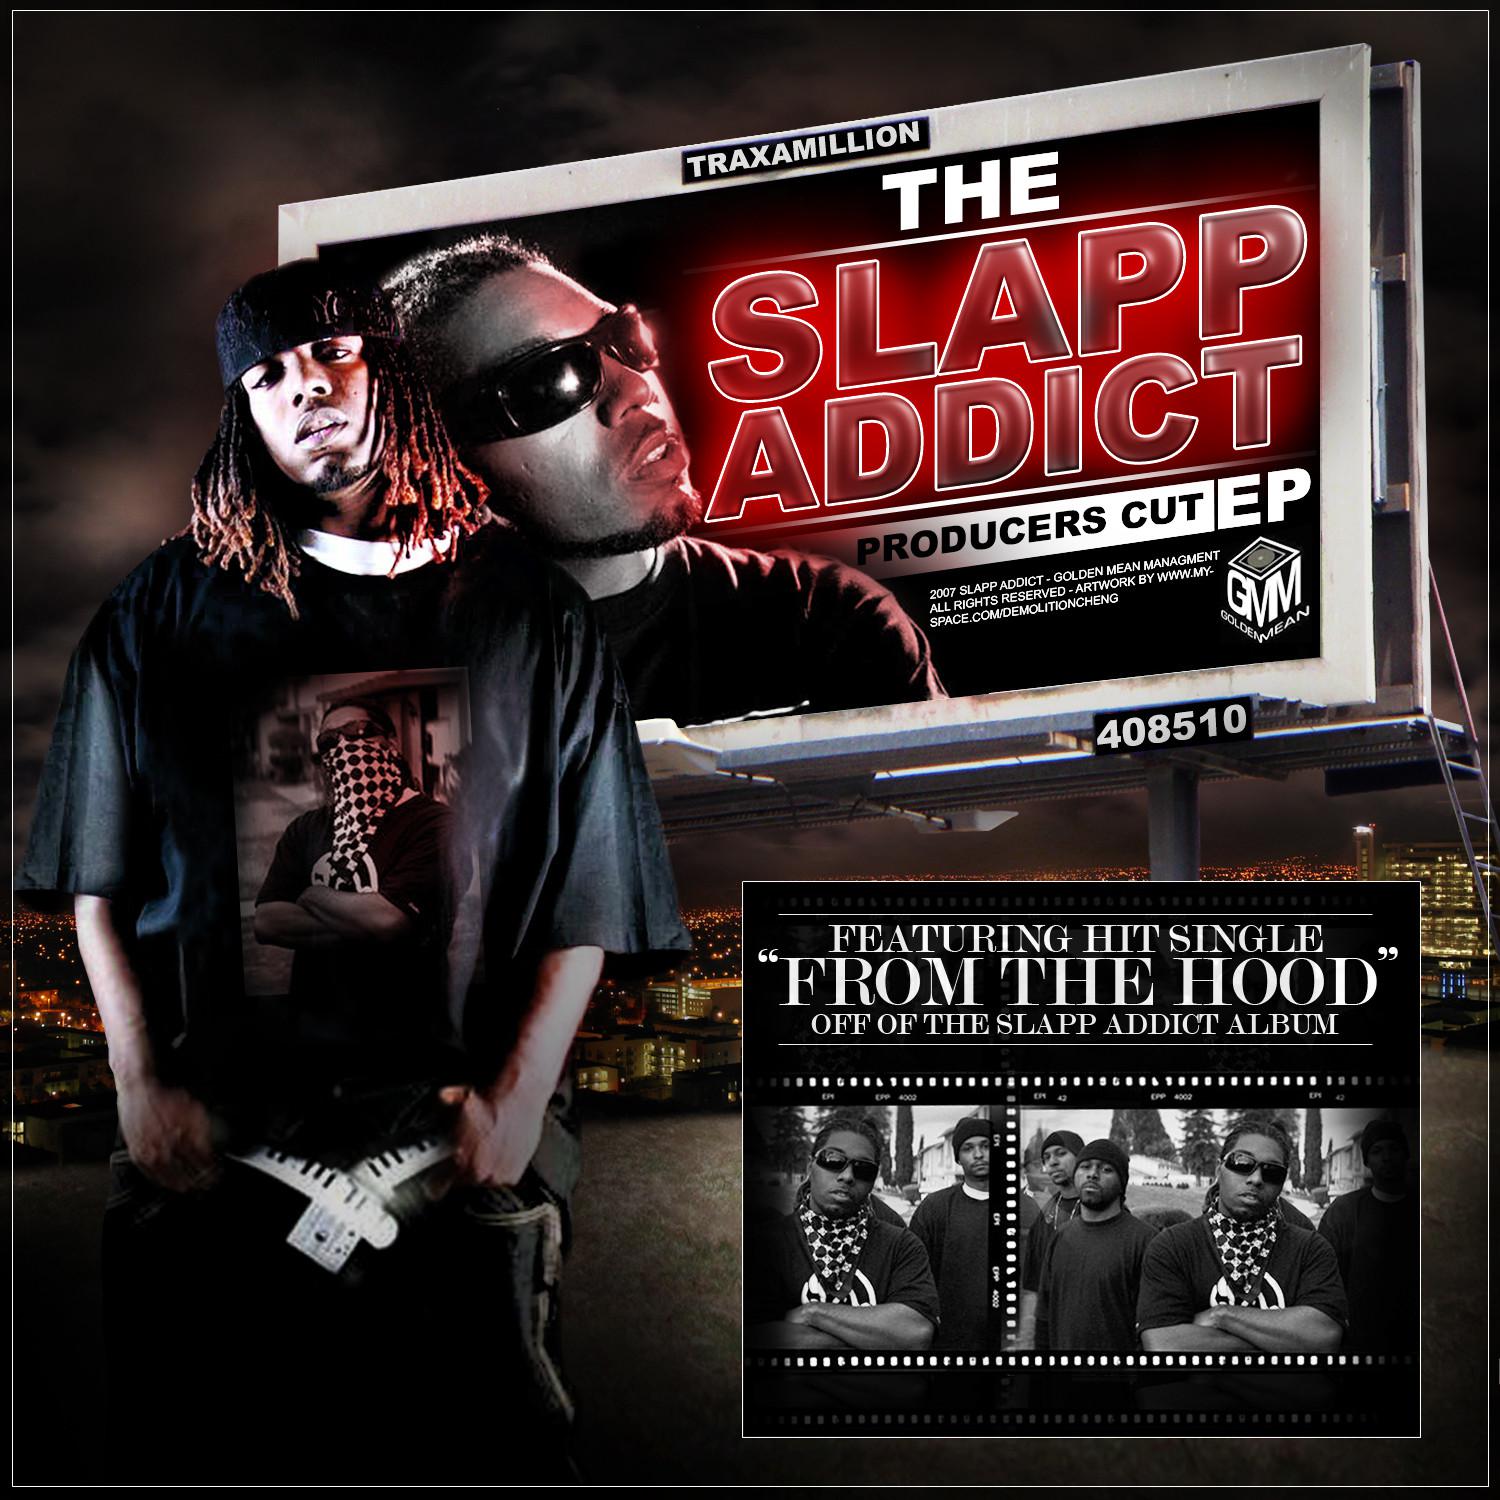 The Slapp Addict - Producers Cut EP